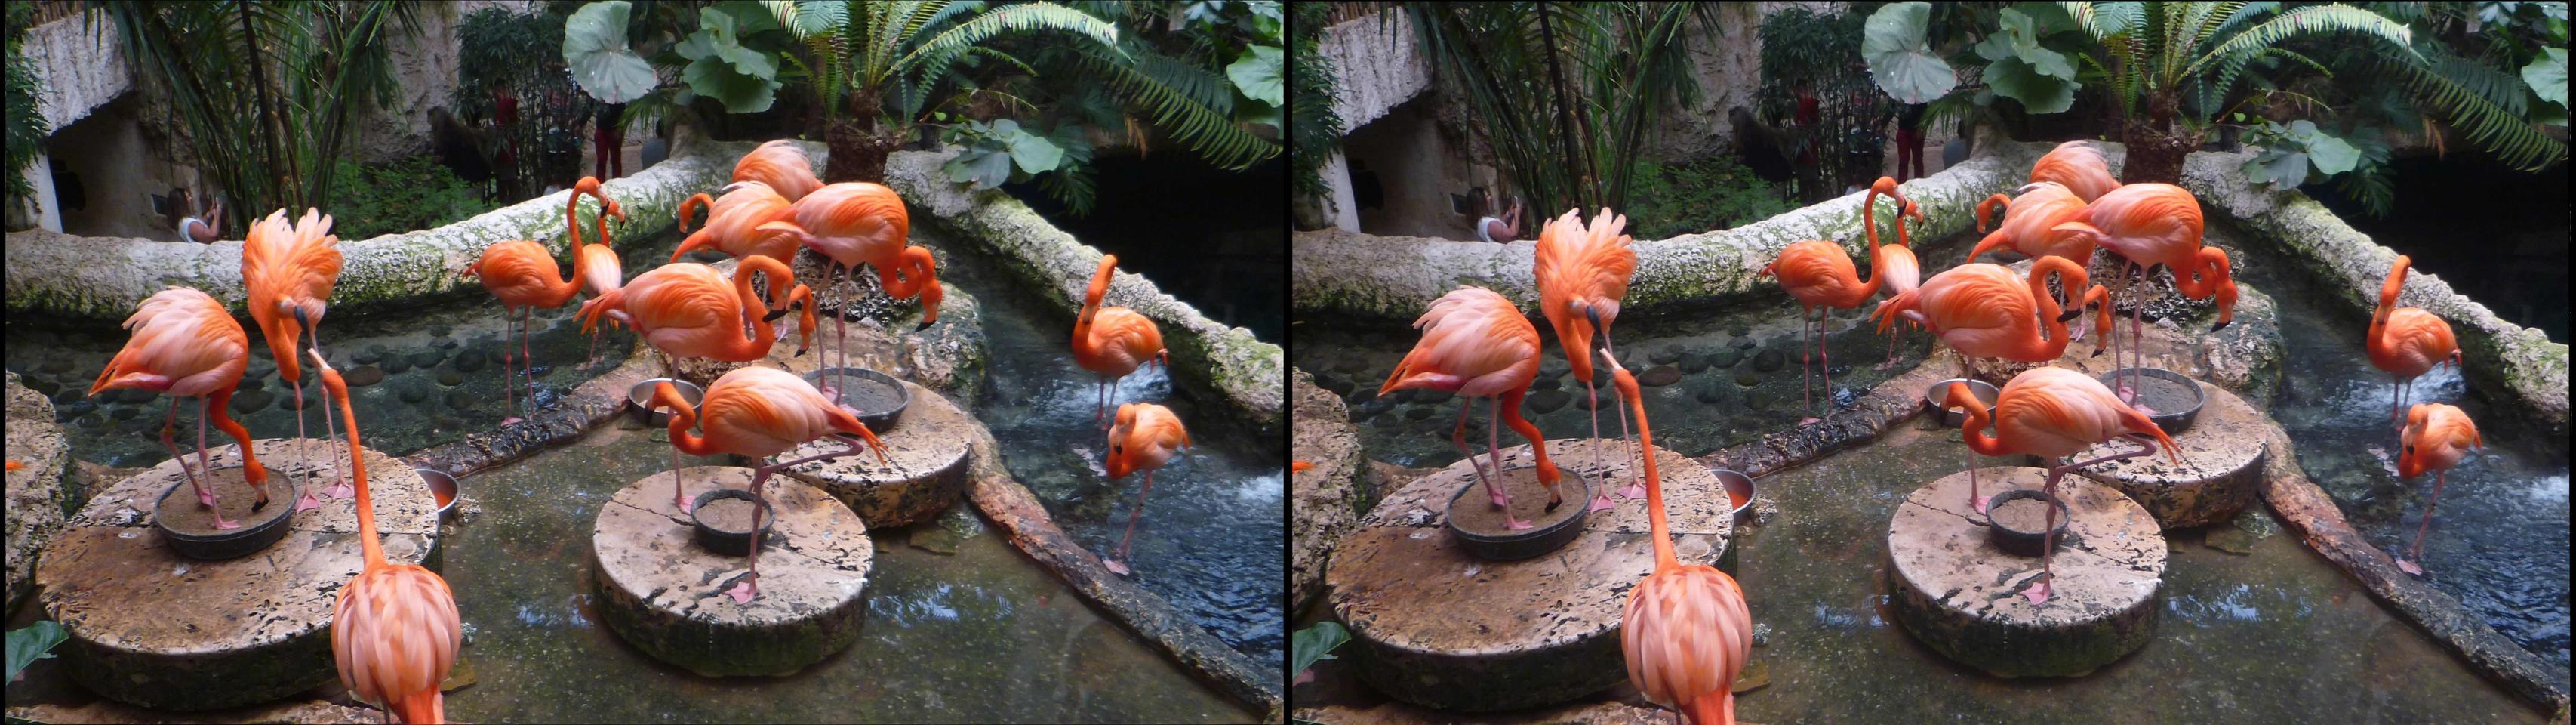 Flamingos, Dallas Zoo